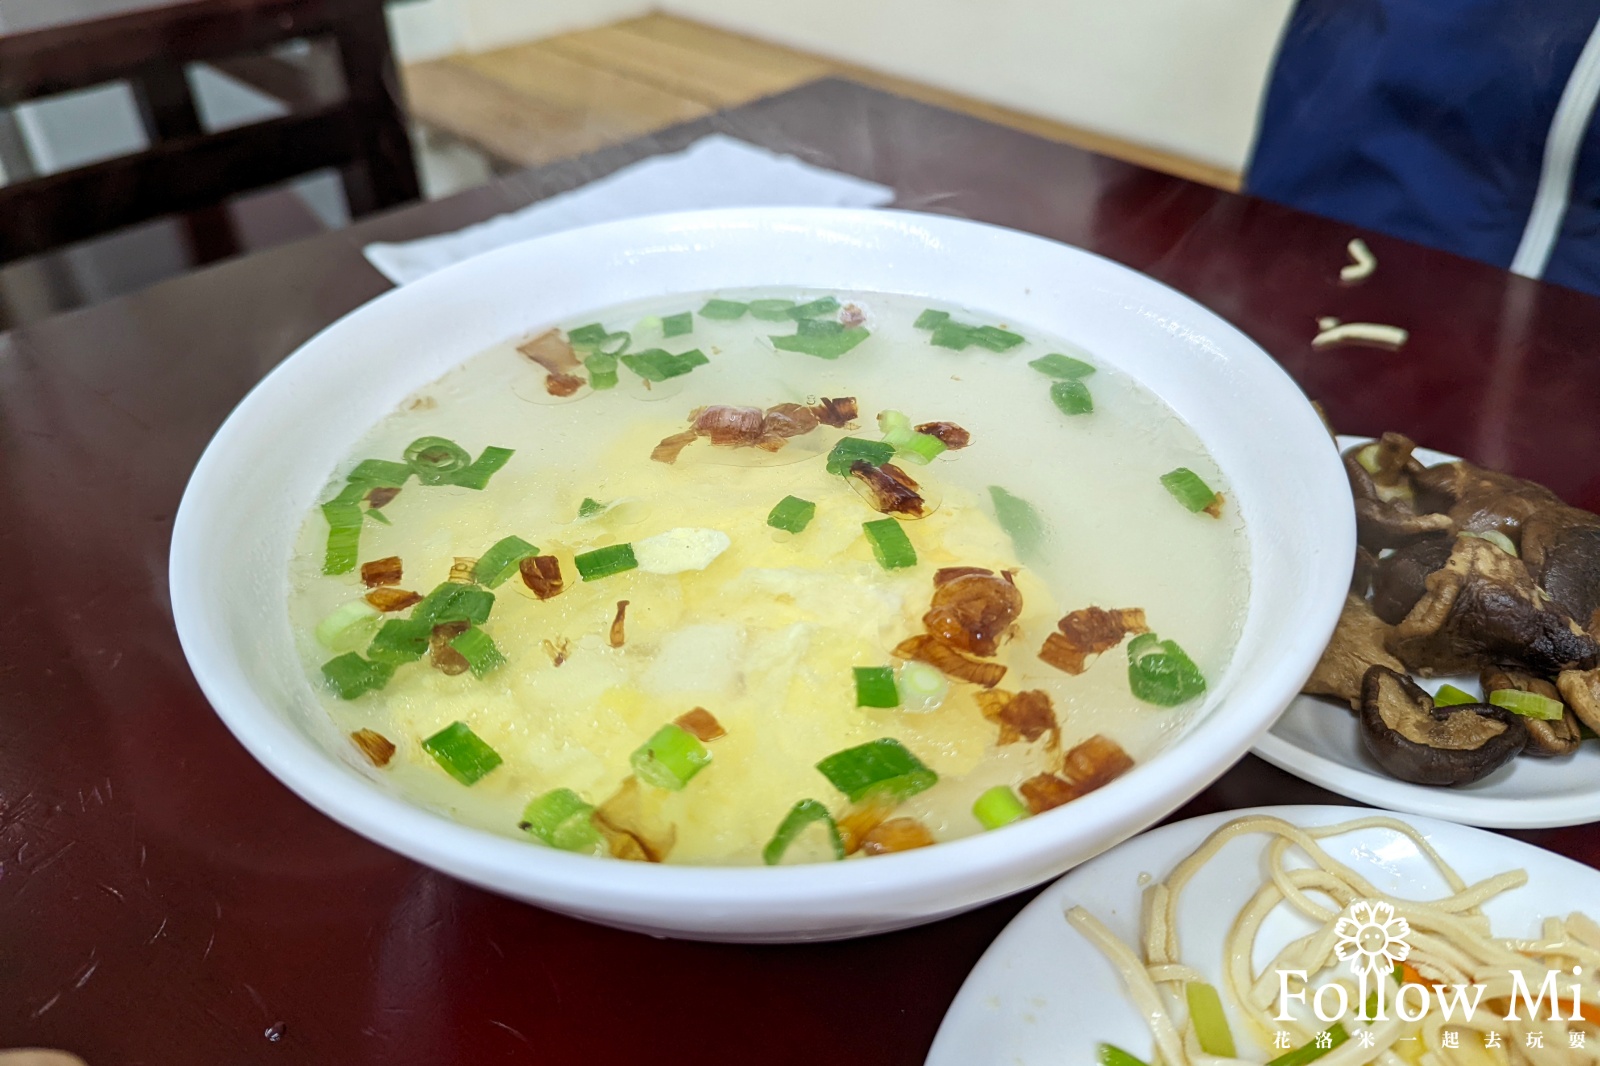 新竹美食,璽子牛肉麵,竹北市